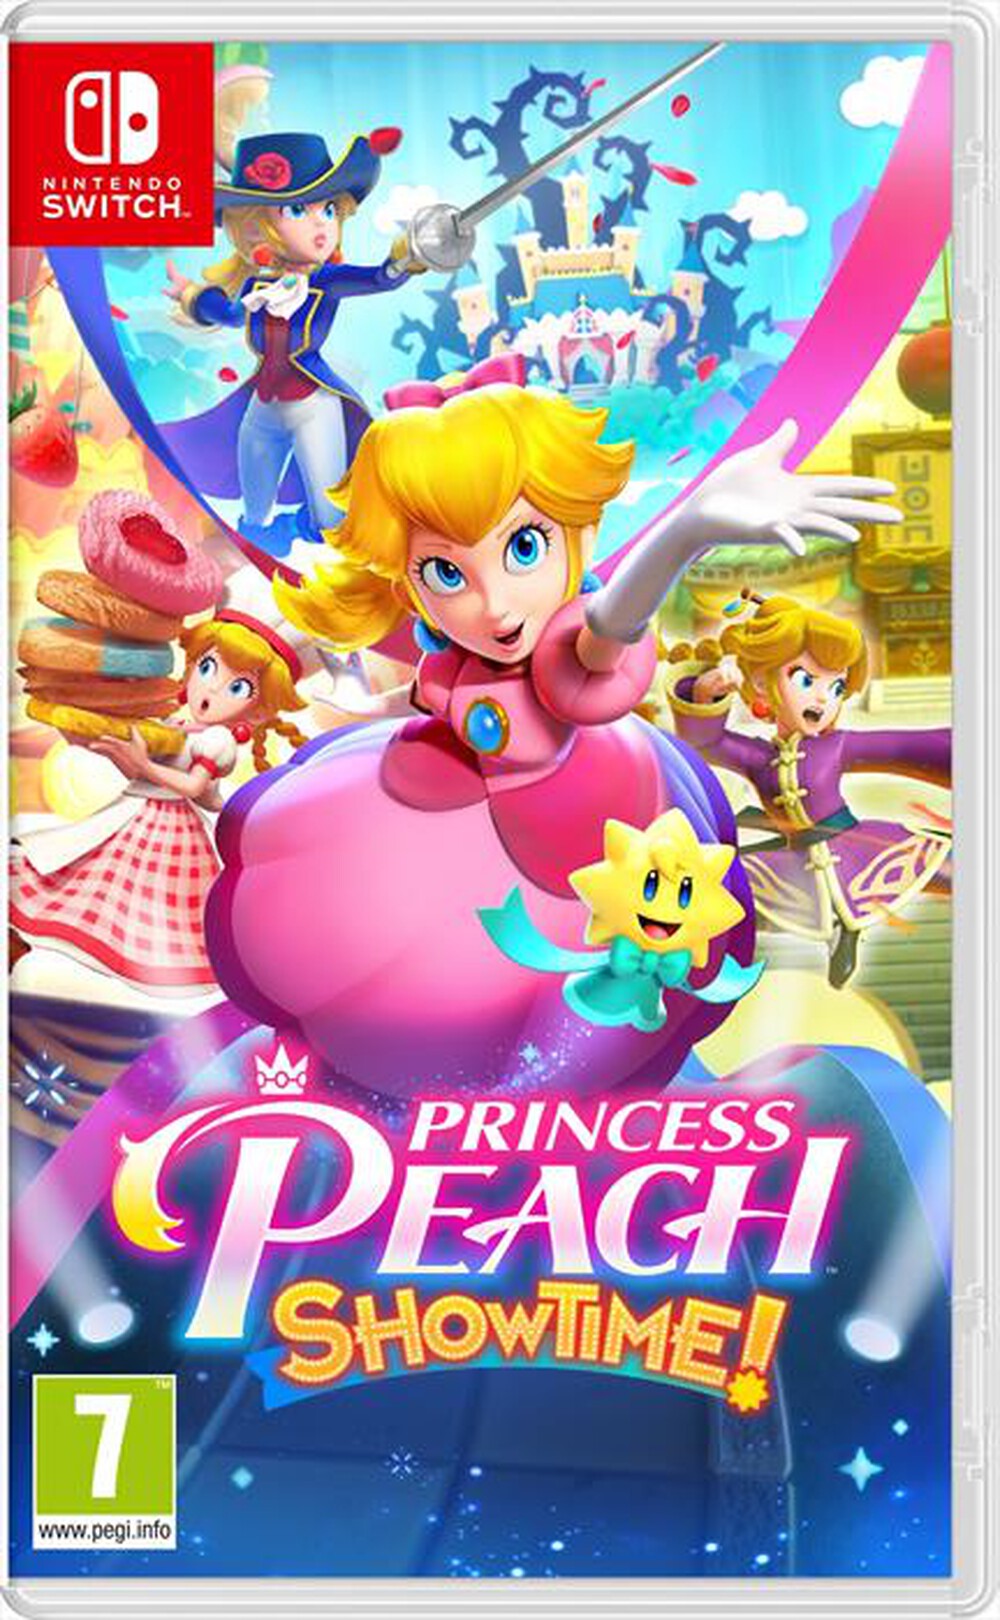 "NINTENDO - Princess peach showtime"